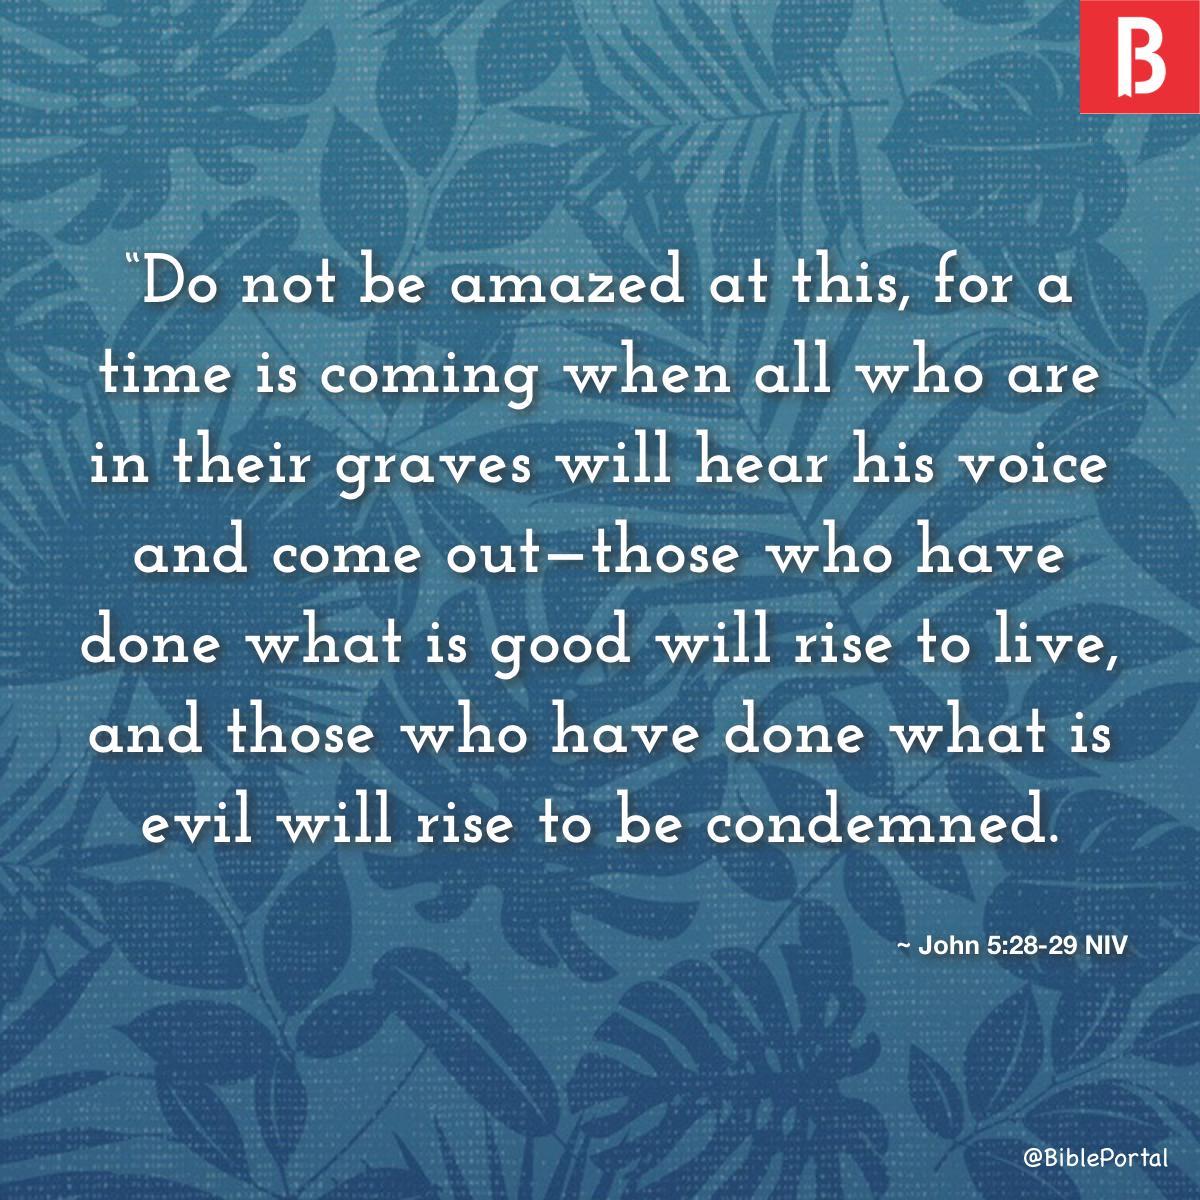 John 5:28-29 NIV